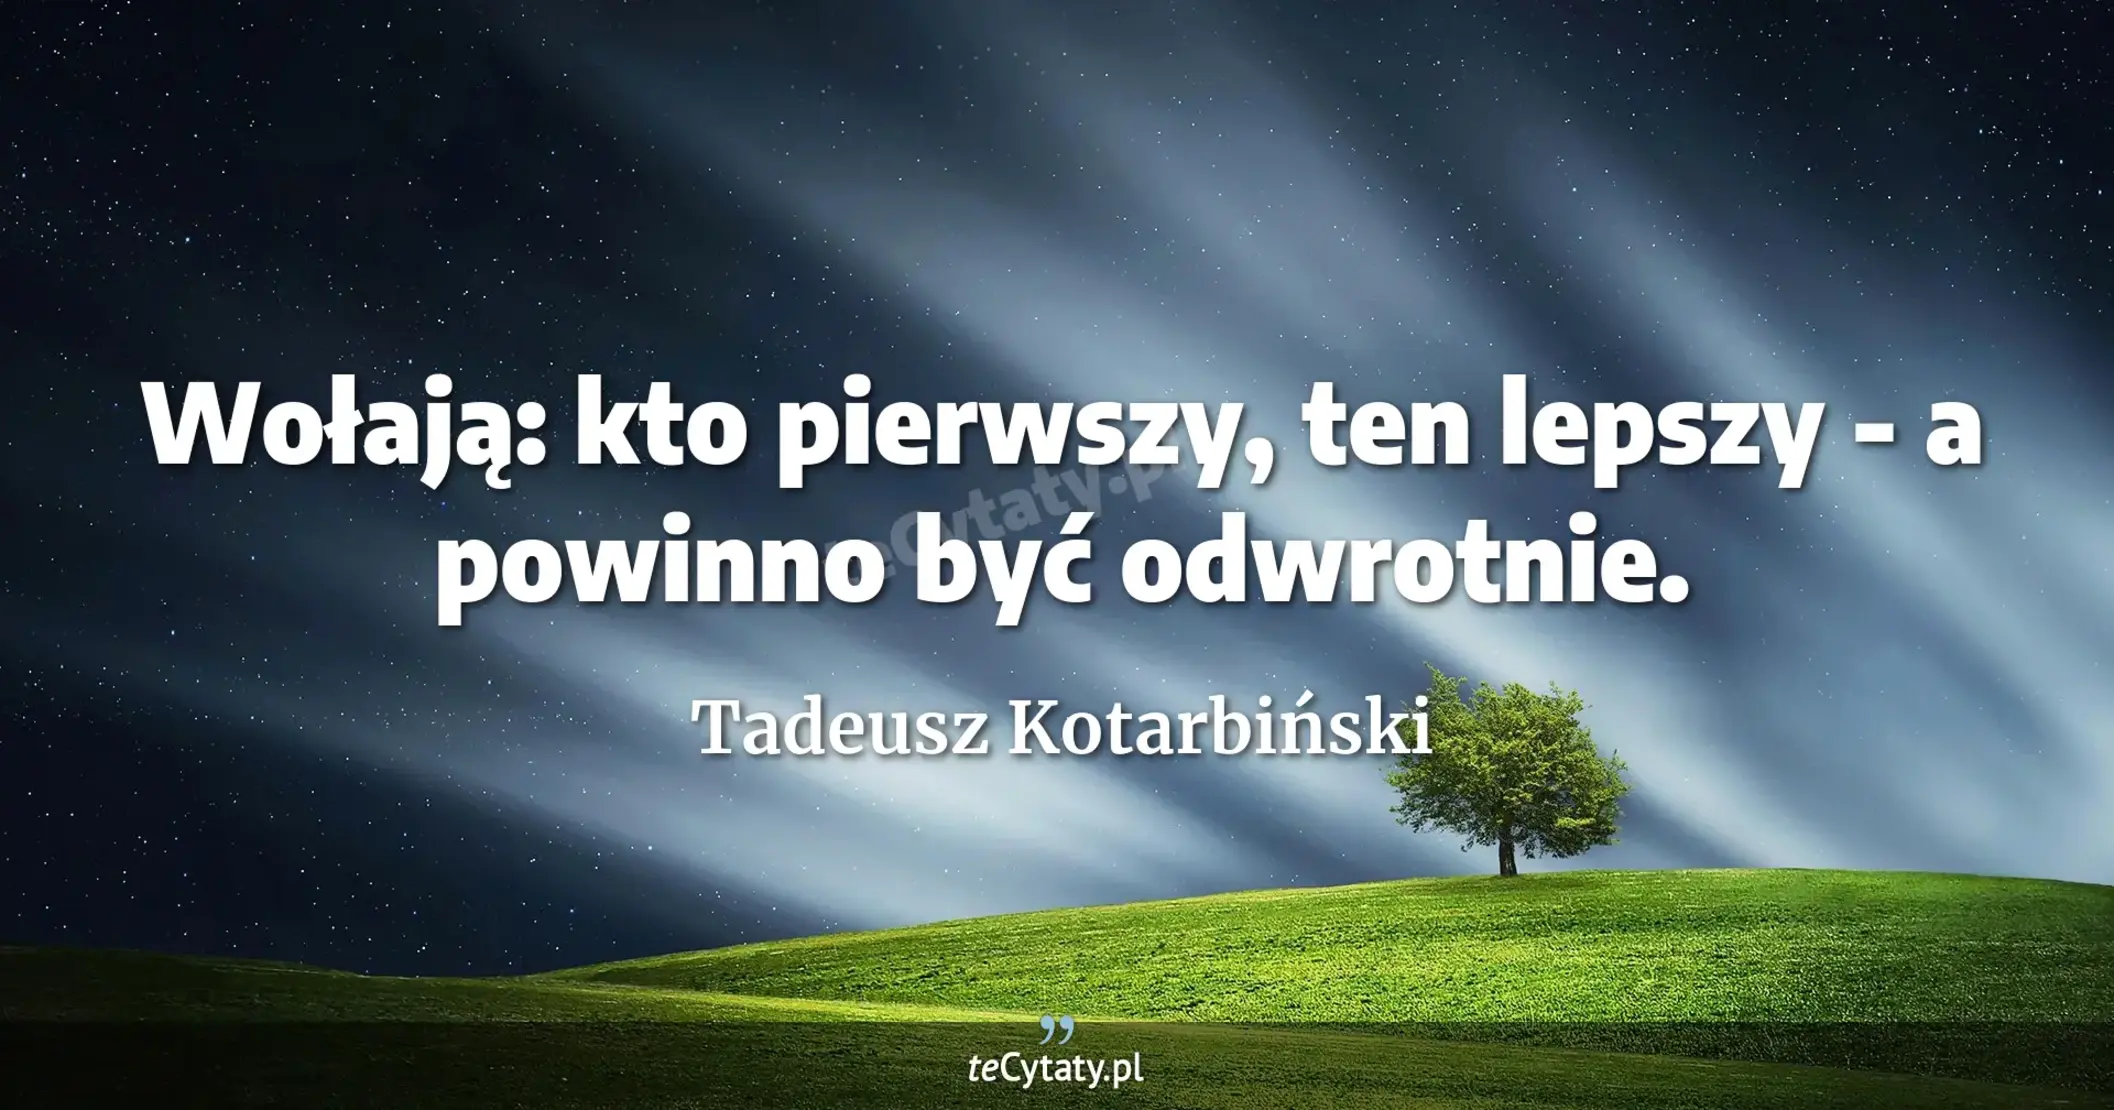 Wołają: kto pierwszy, ten lepszy - a powinno być odwrotnie. - Tadeusz Kotarbiński